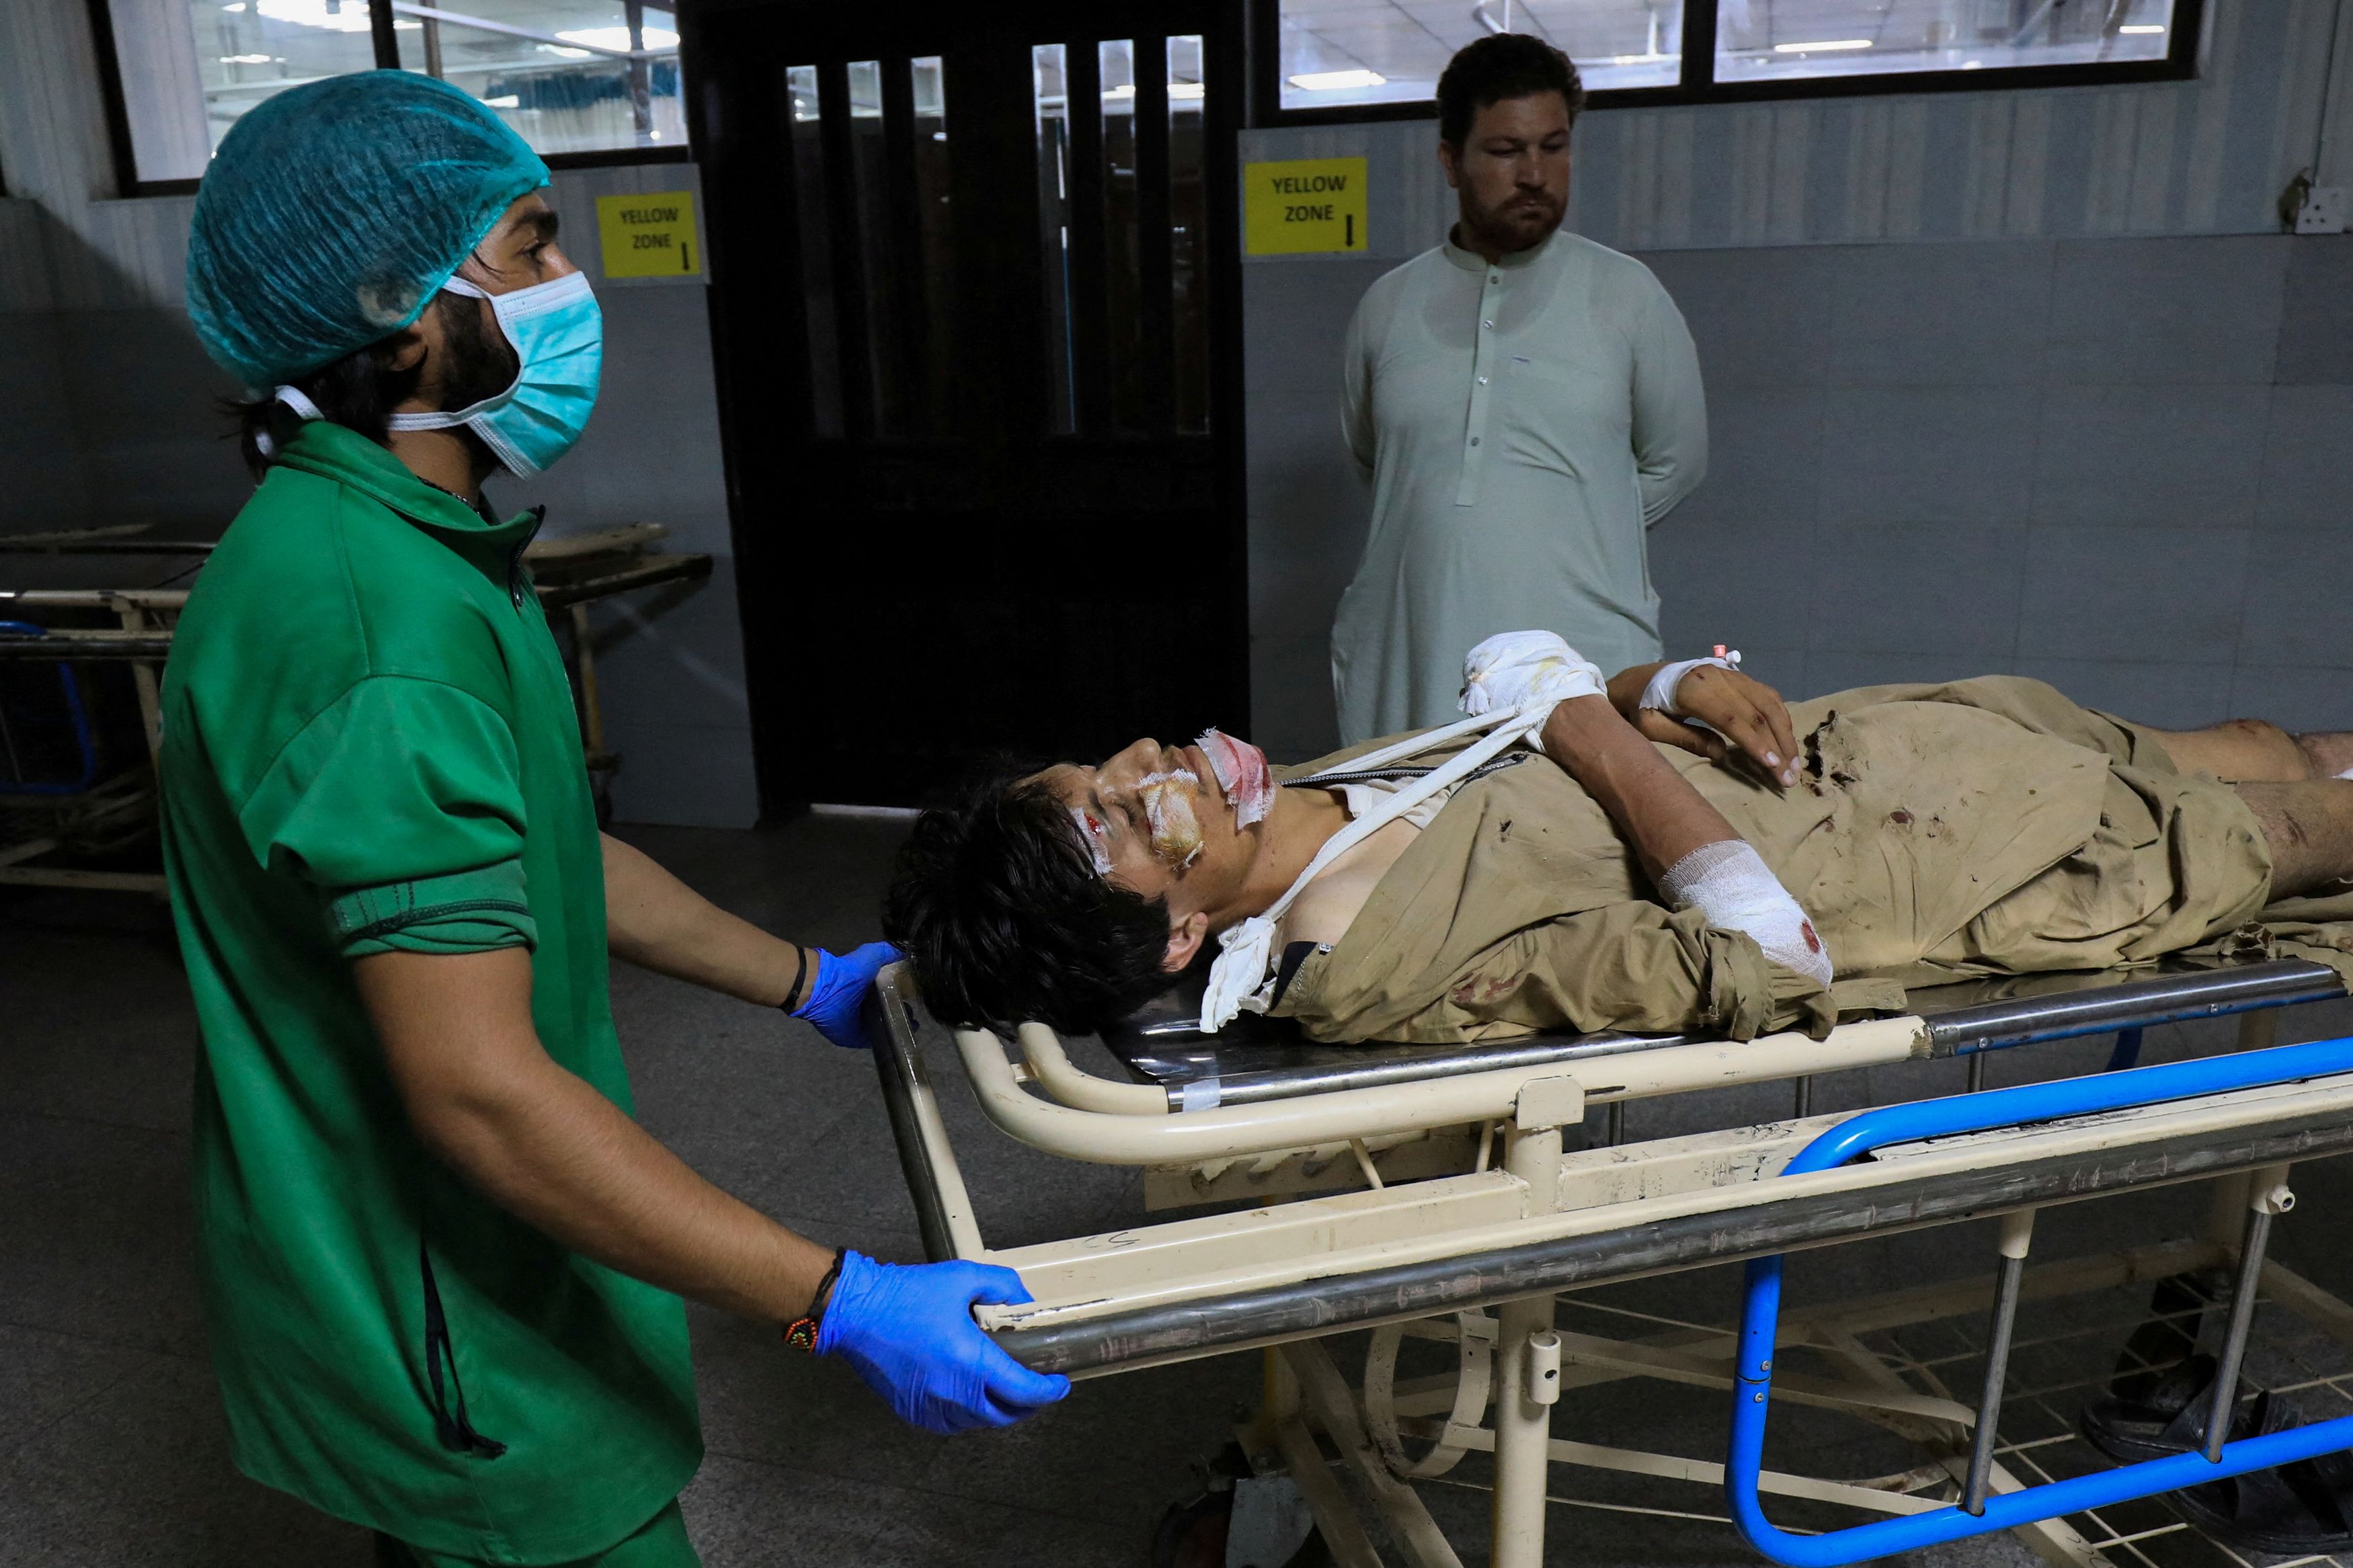 Πακιστάν: Η στιγμή της βομβιστικής επίθεσης σε πολιτική συγκέντρωση (Σκληρές εικόνες)